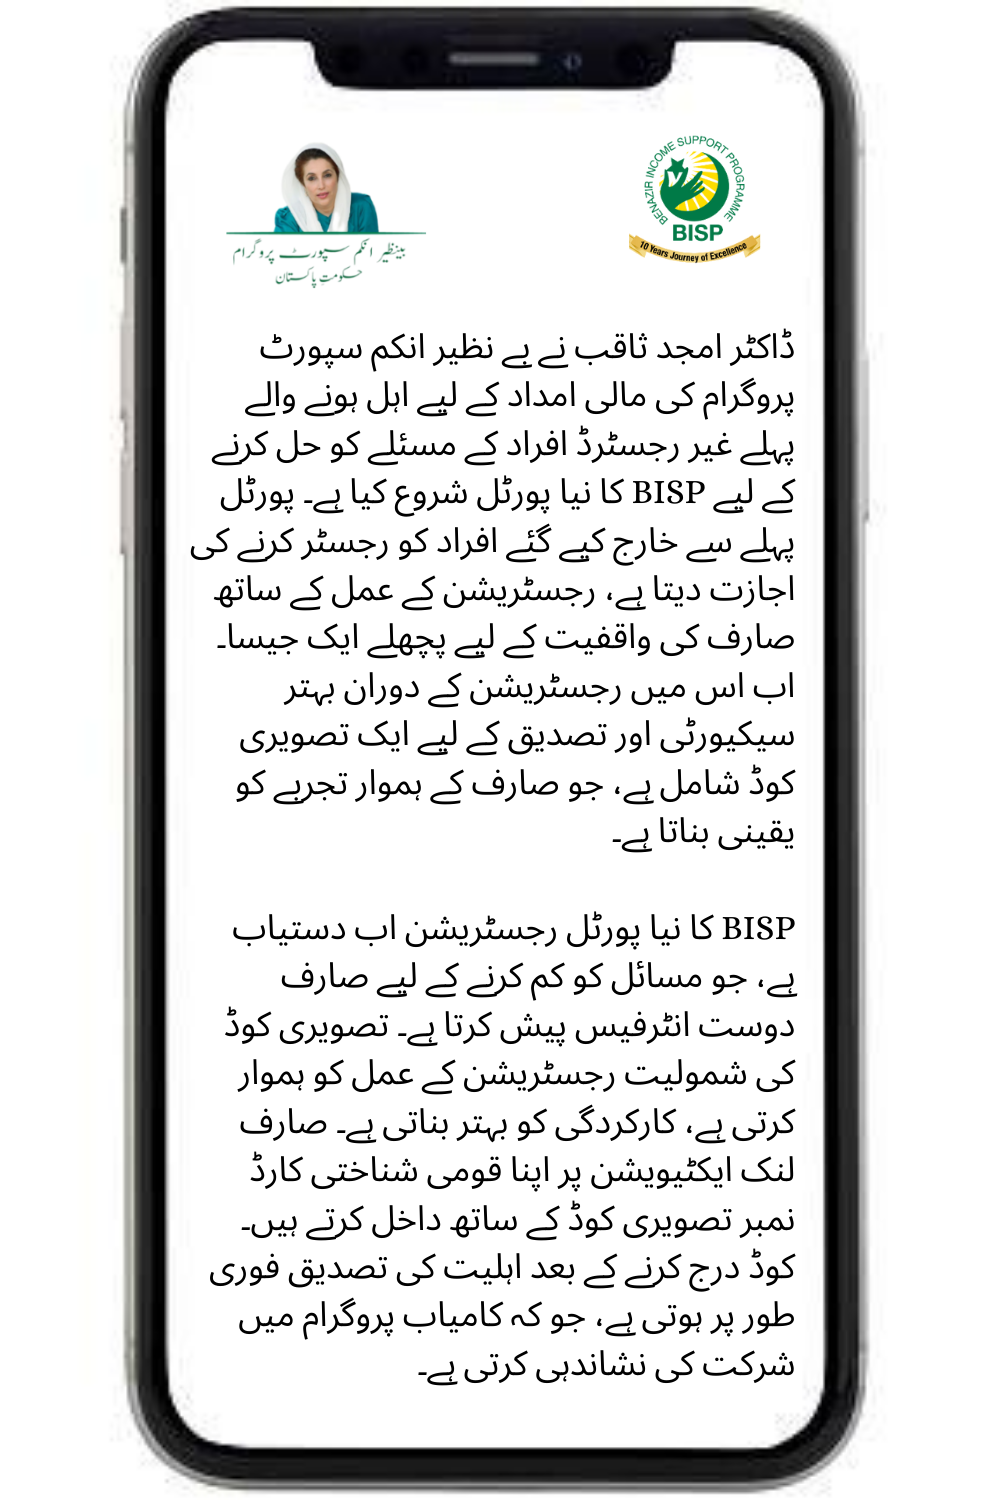 Dr. Amjad Saqib has launched a BISP new portal